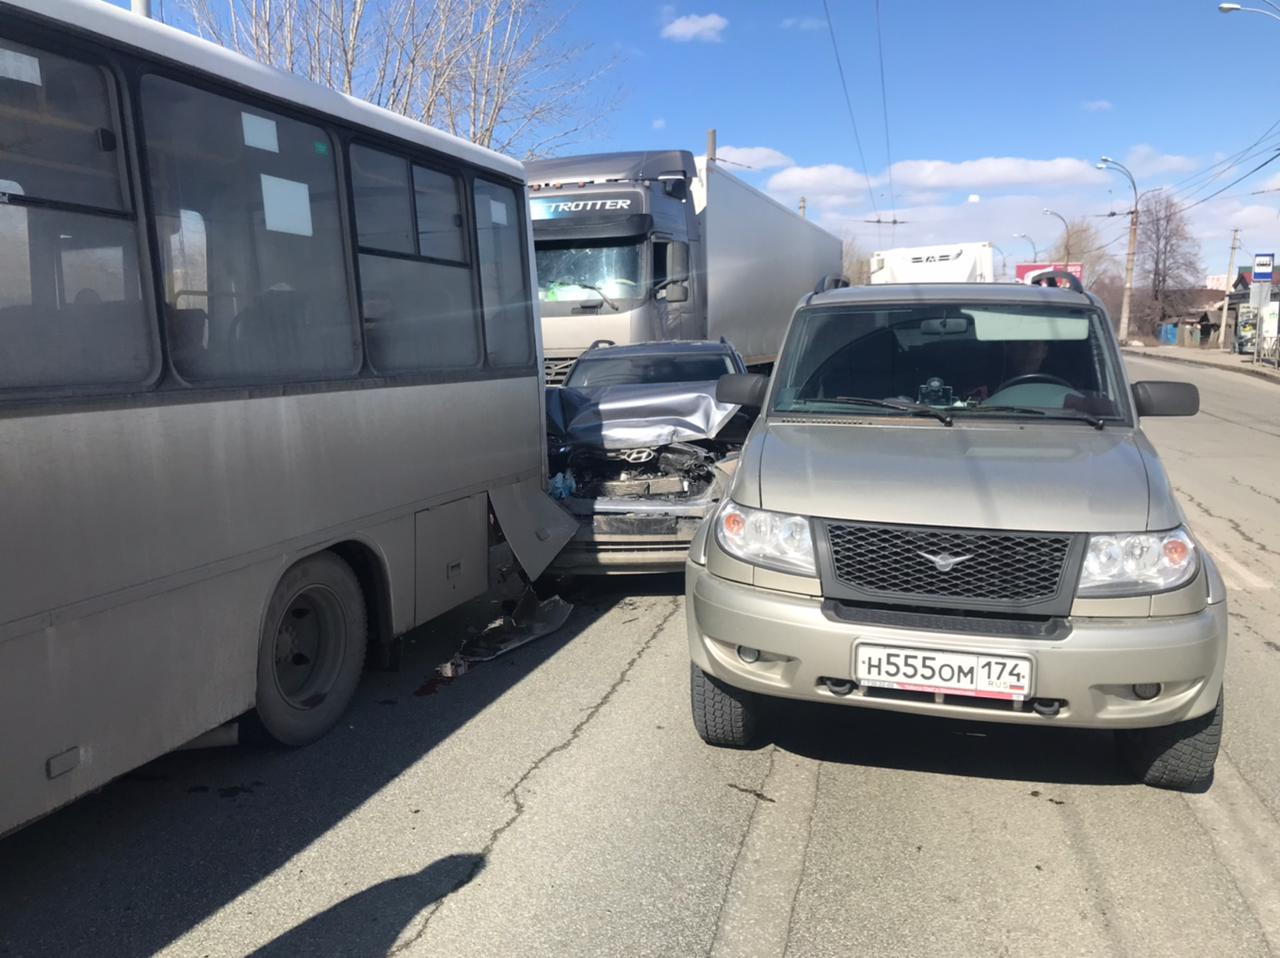 В Екатеринбурге пьяный водитель грузовика устроил массовое ДТП с автобусом и двумя легковушками